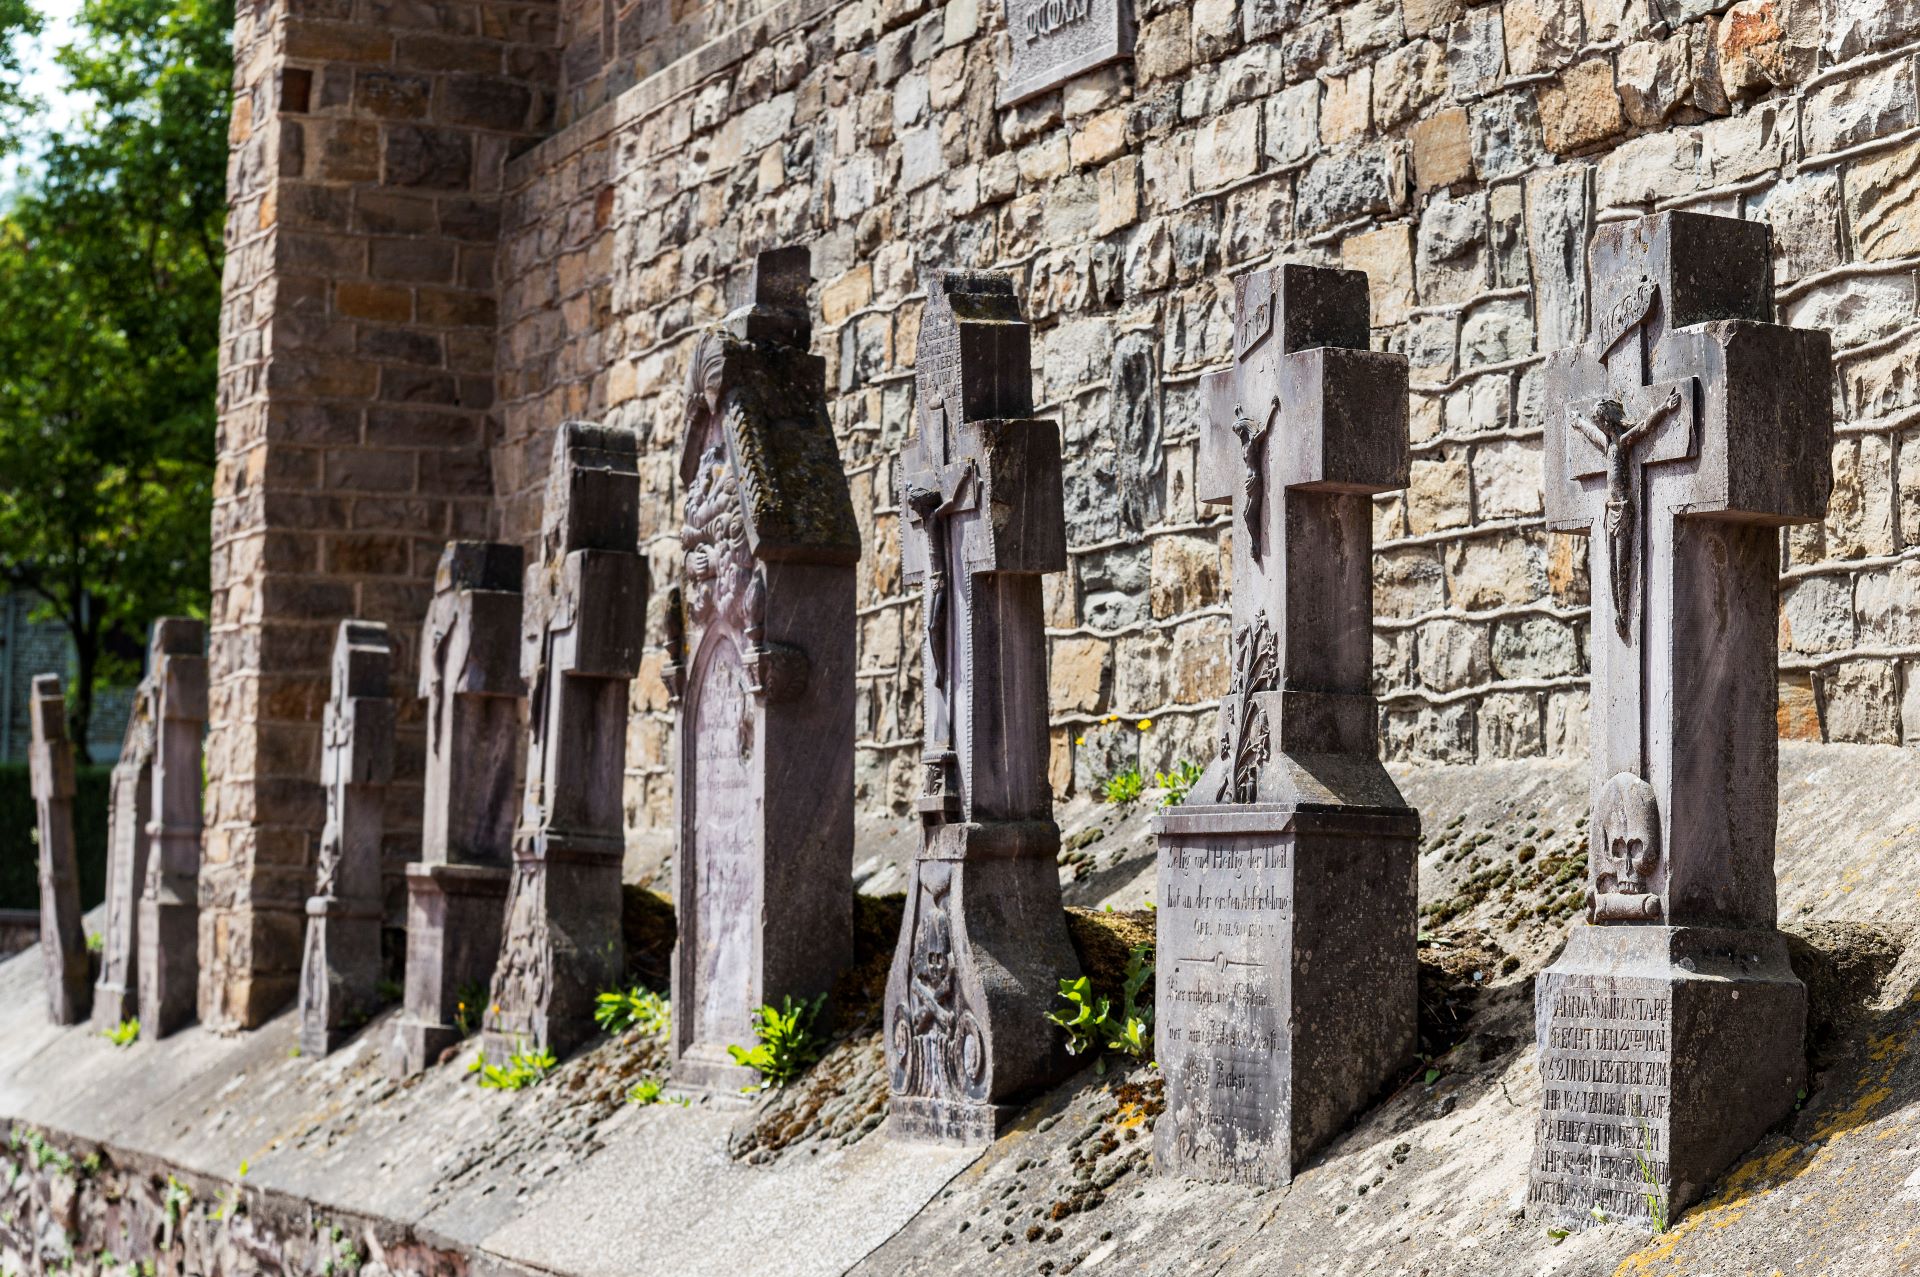 Devant le musée de la galerie de l'ardoise, une rangée de pierres tombales commémore les mineurs décédés.